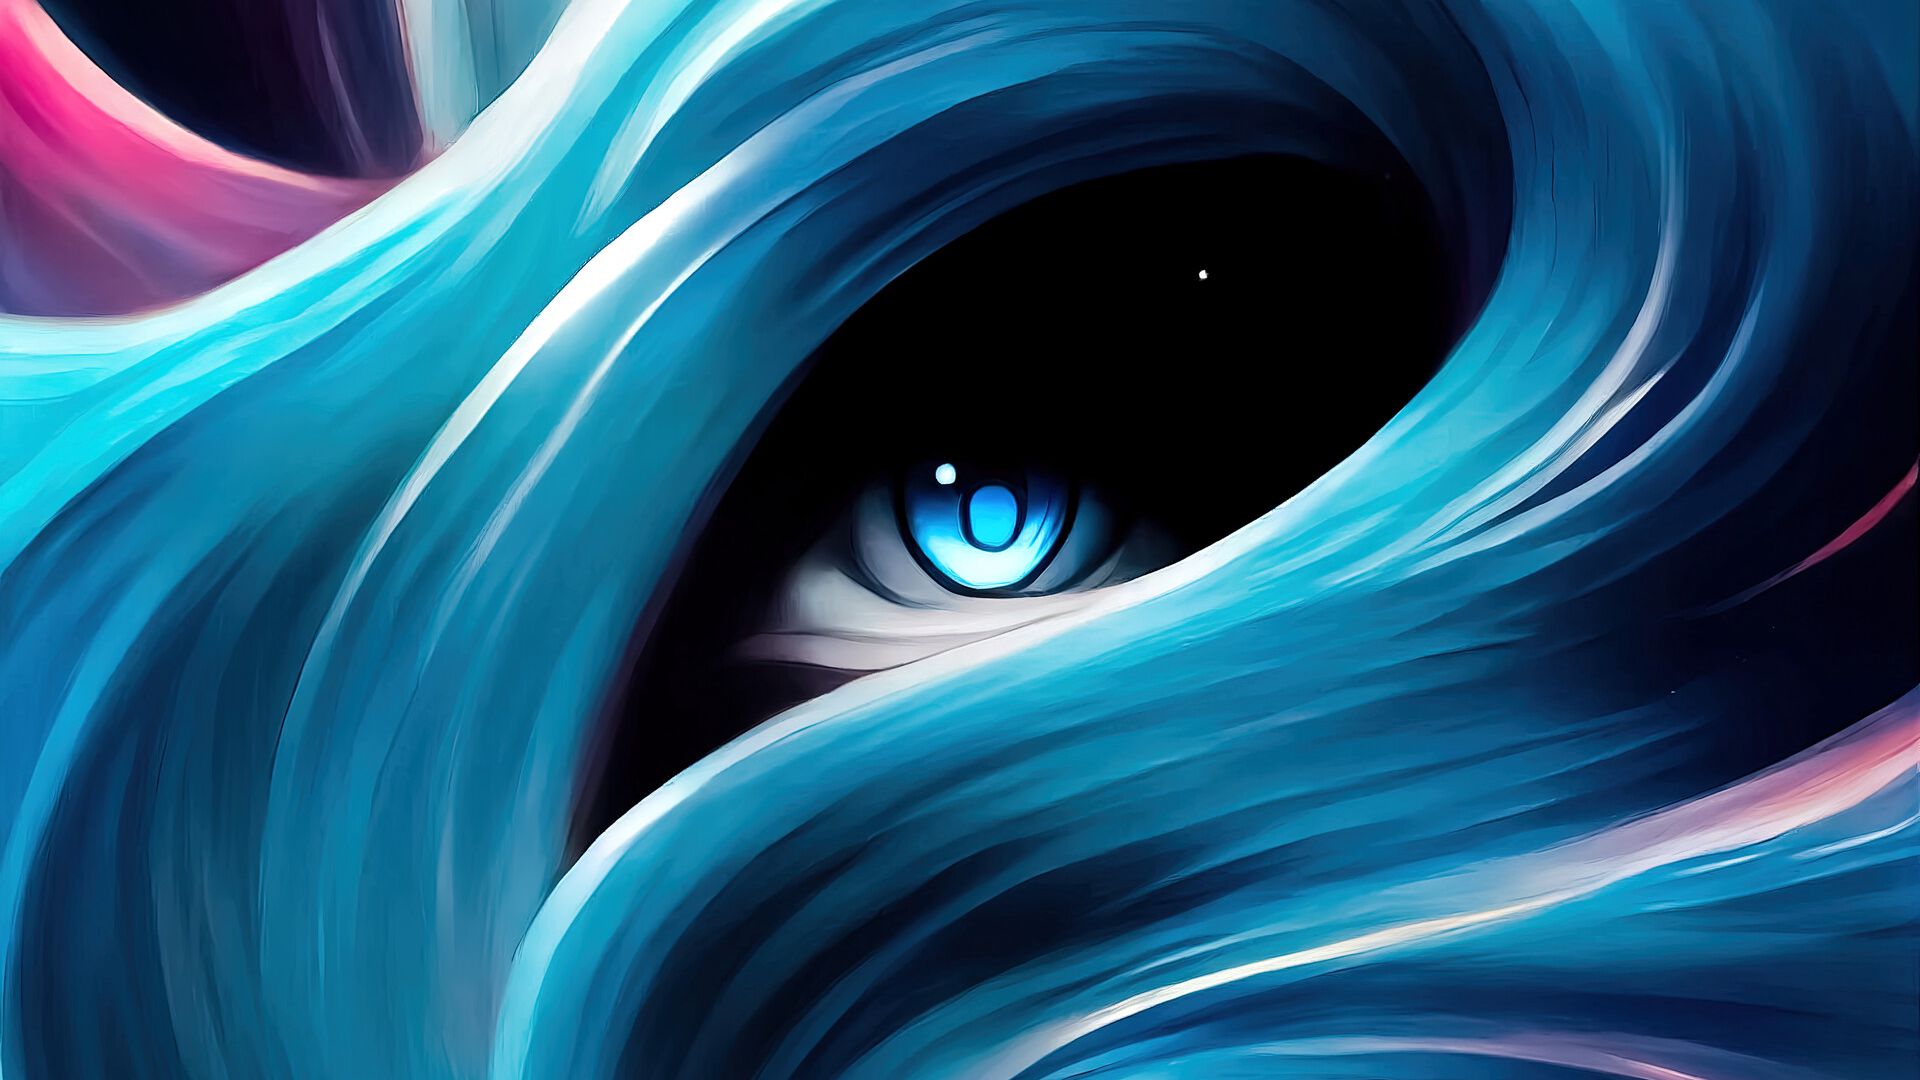 Wallpaper Eye in swirl Digital Art